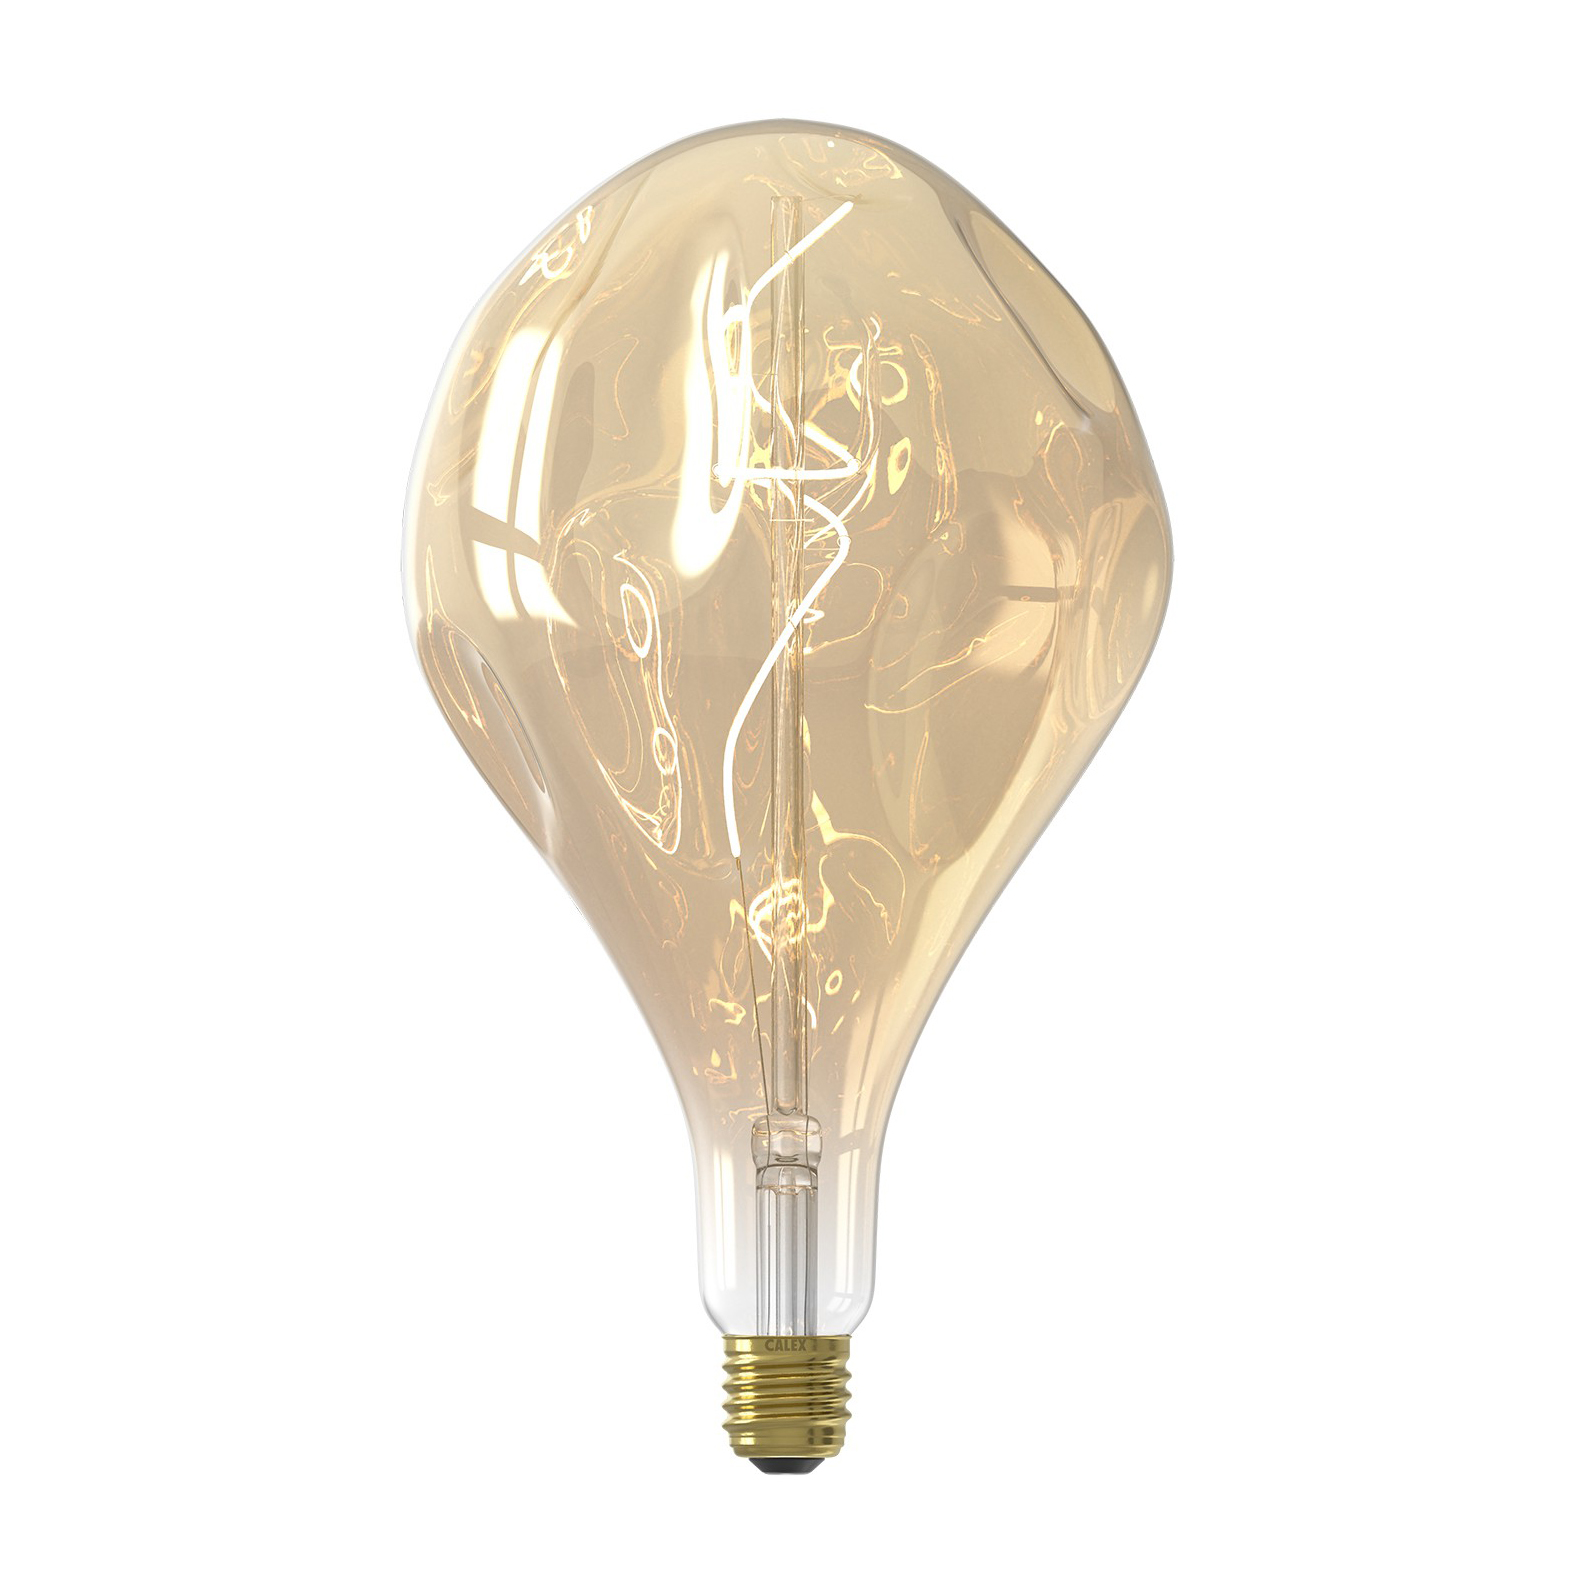 levering aan huis meer en meer herfst Calex 2101001600 Organic Evo Lamp | Bulb | 6W | E27 | Gold | Dimmable